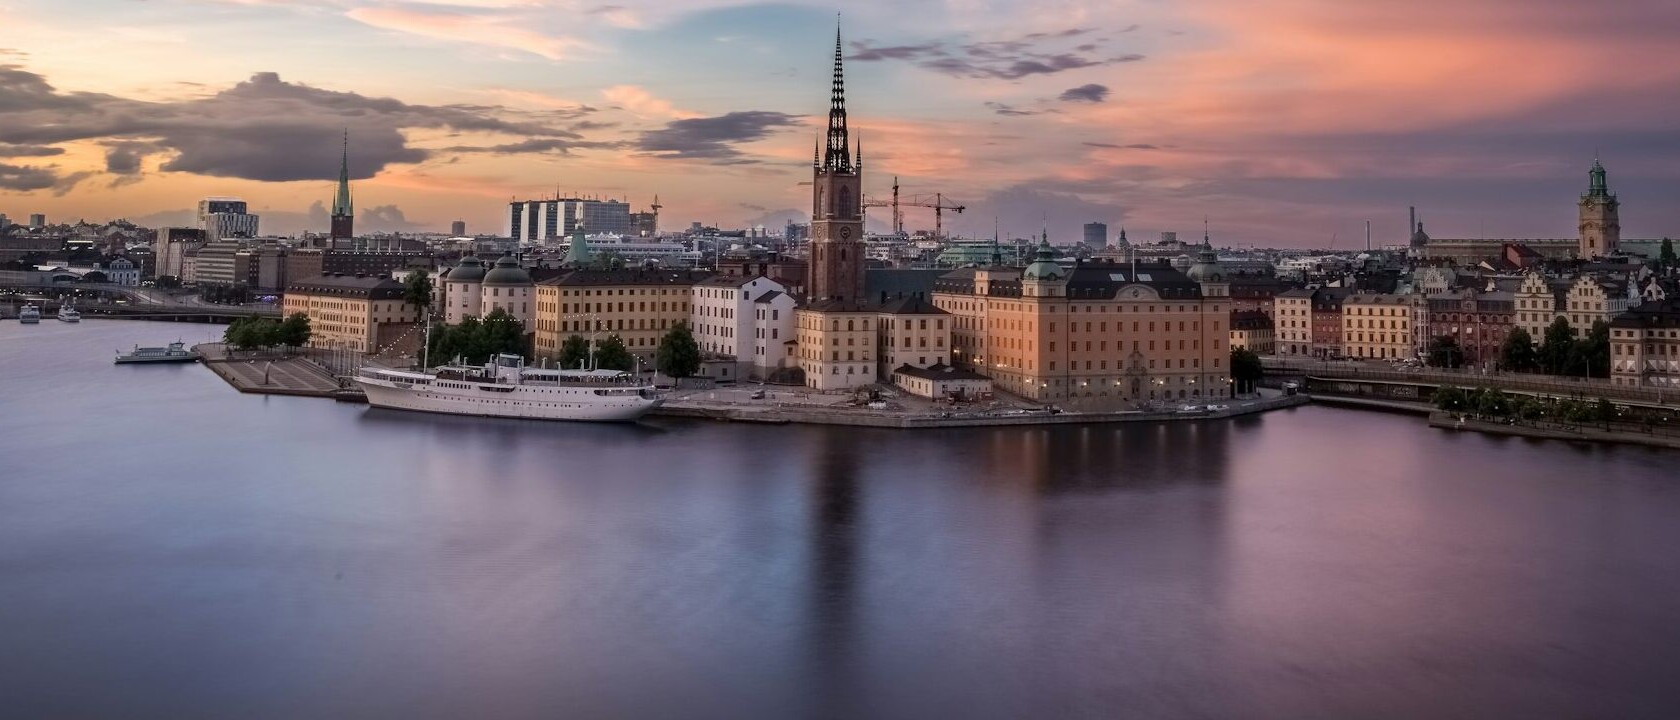 Bildausschnitt von Stockholm im Abendlicht von der Wasserseite fotographiert